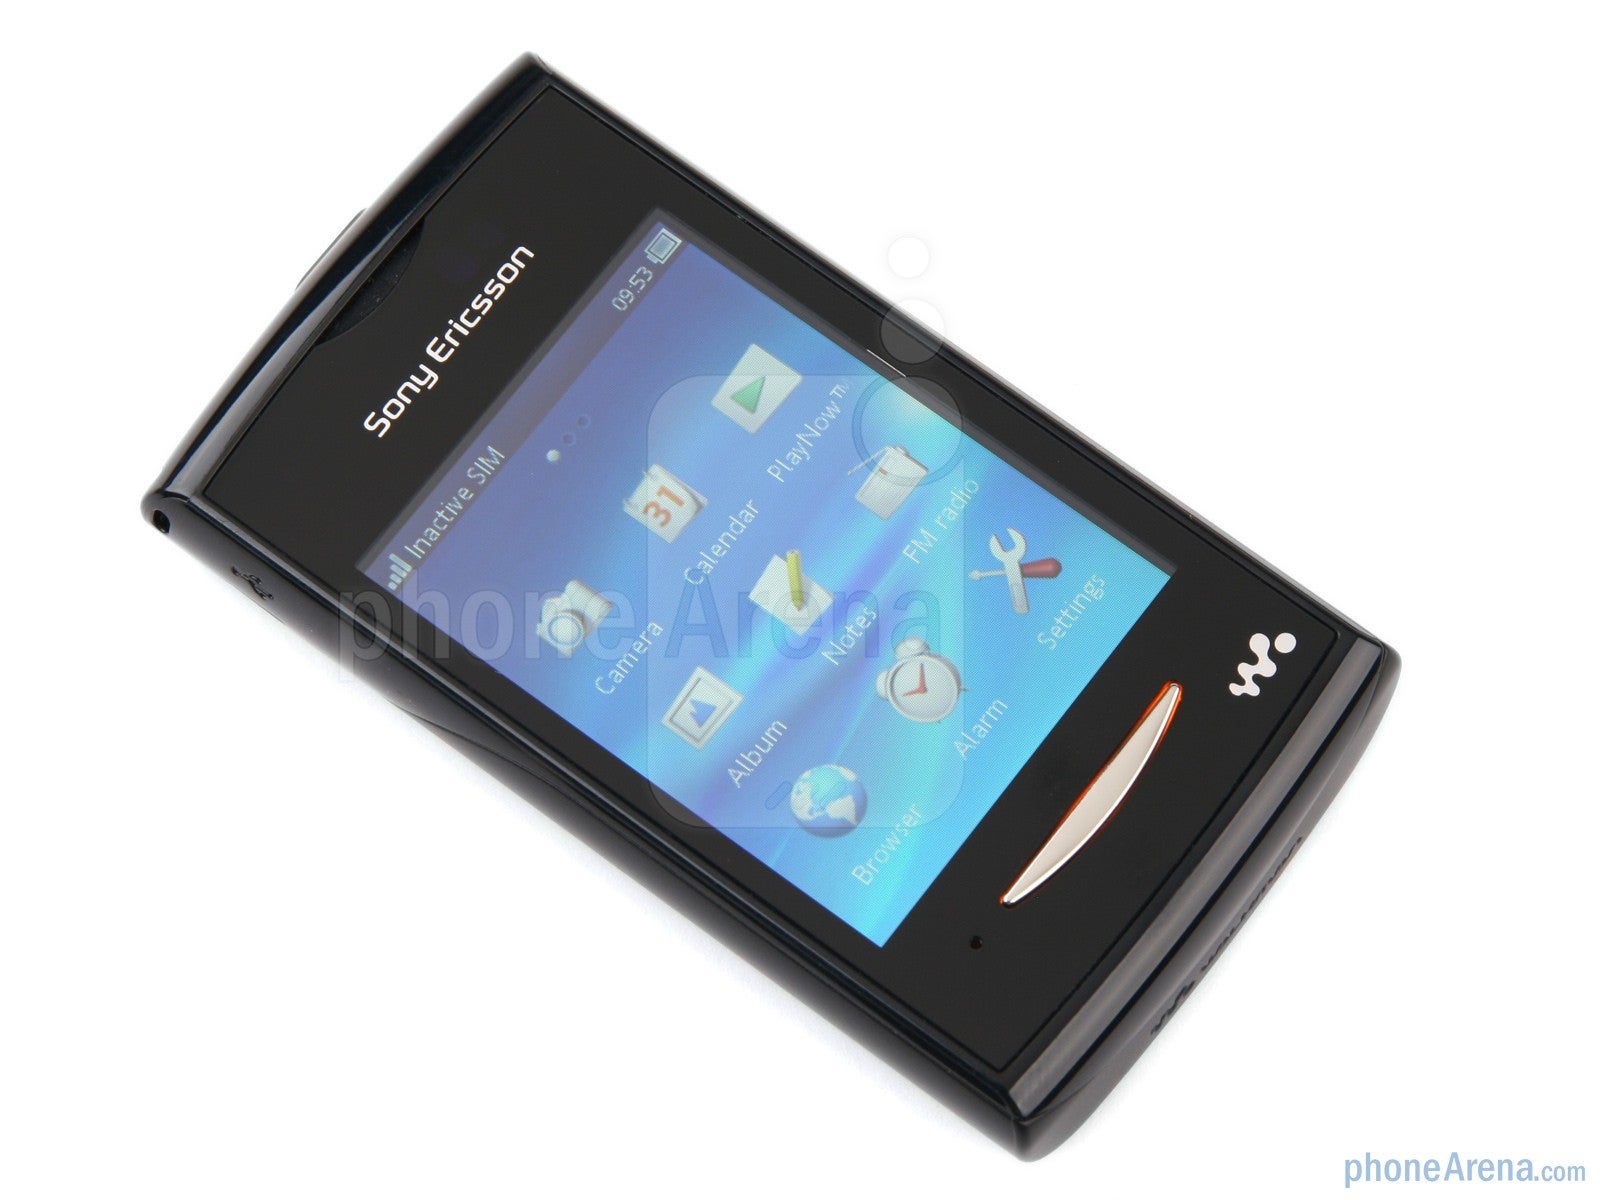 Sony Ericsson Yendo Preview